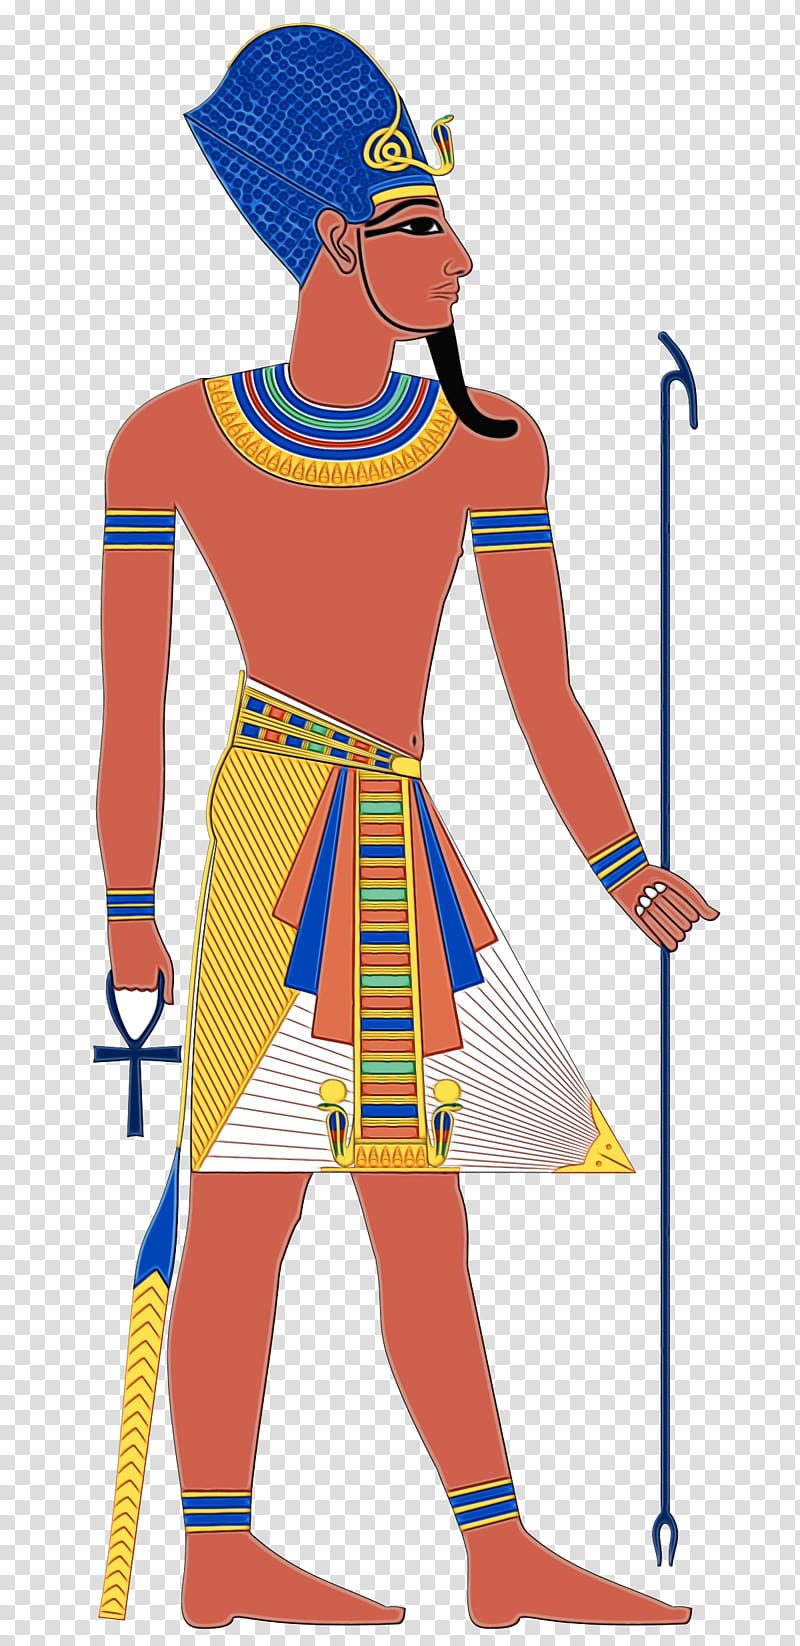 Watercolor, Paint, Wet Ink, Ancient Egypt, Atum, Ancient Egyptian Deities, Ancient Egyptian Religion, Thoth transparent background PNG clipart